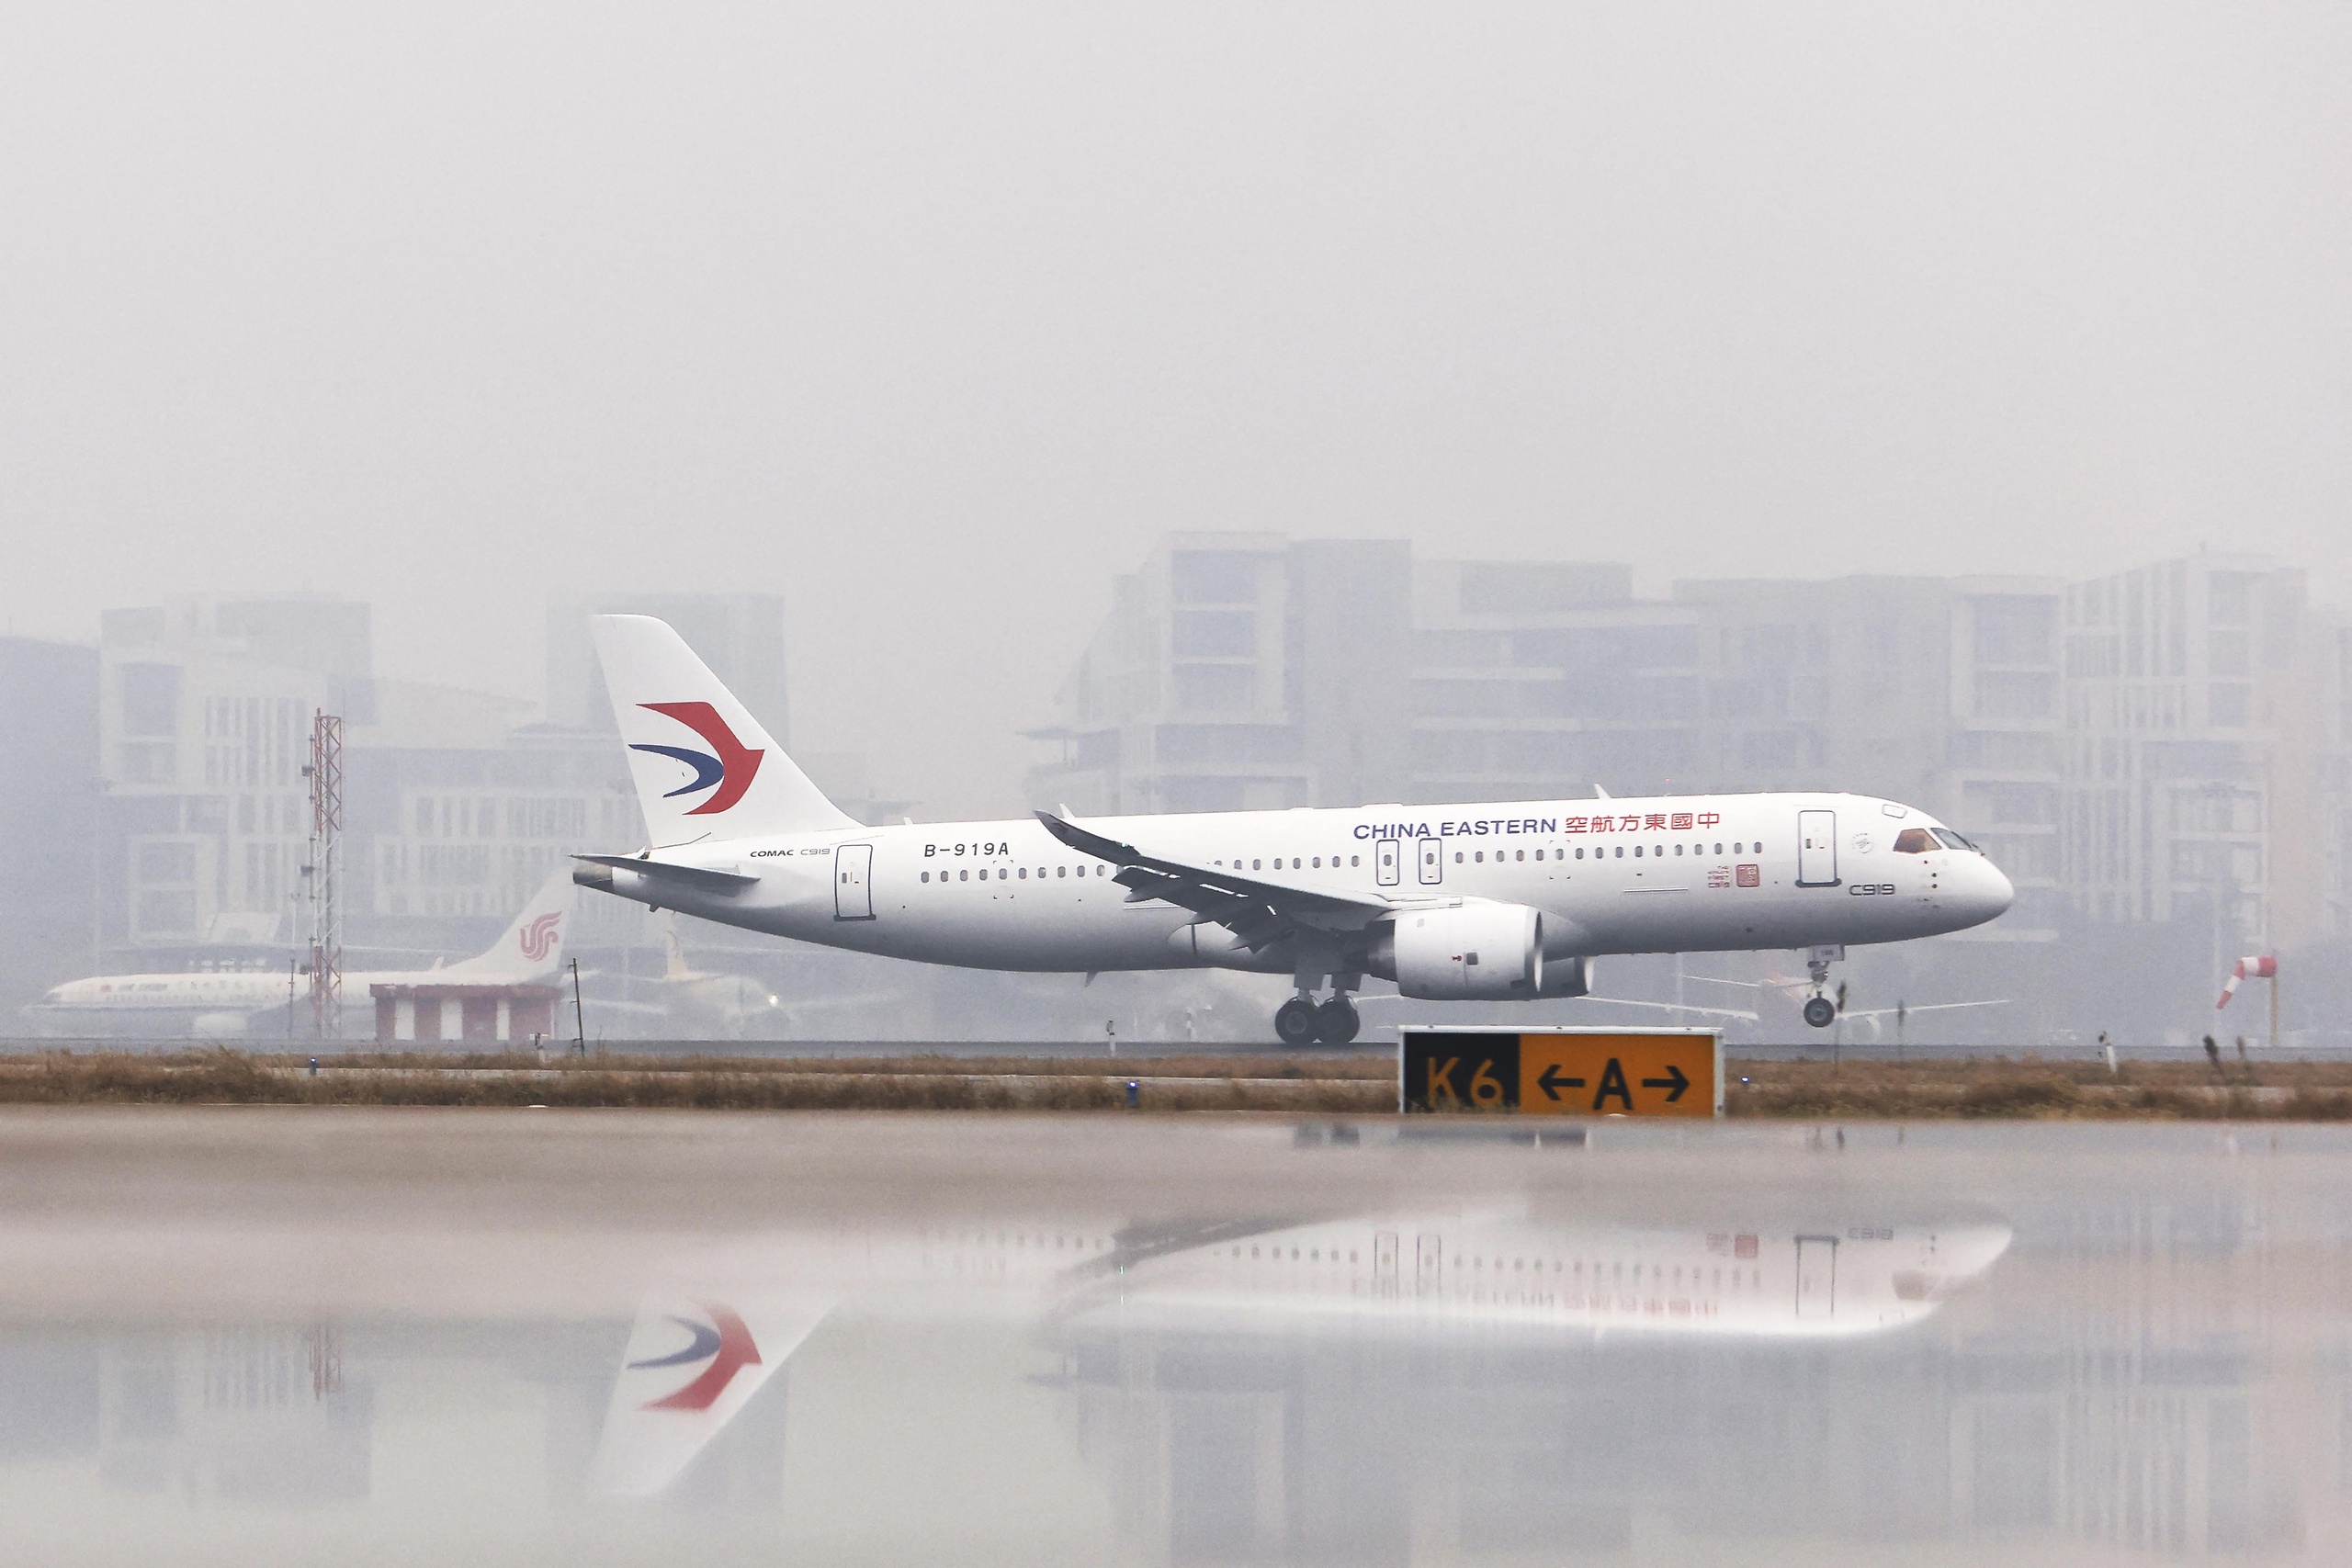 Luchtvaartmaatschappij China Eastern Airlines voert zondag de eerste commerciële vlucht uit met een C919 van de Chinese vliegtuigbouwer Comac. De C919 is de Chinese versie van de Boeing 737 en daarmee gaat Comac de concurrentie aan met de Amerikaanse vliegtuigbouwer en ook het Europese Airbus.